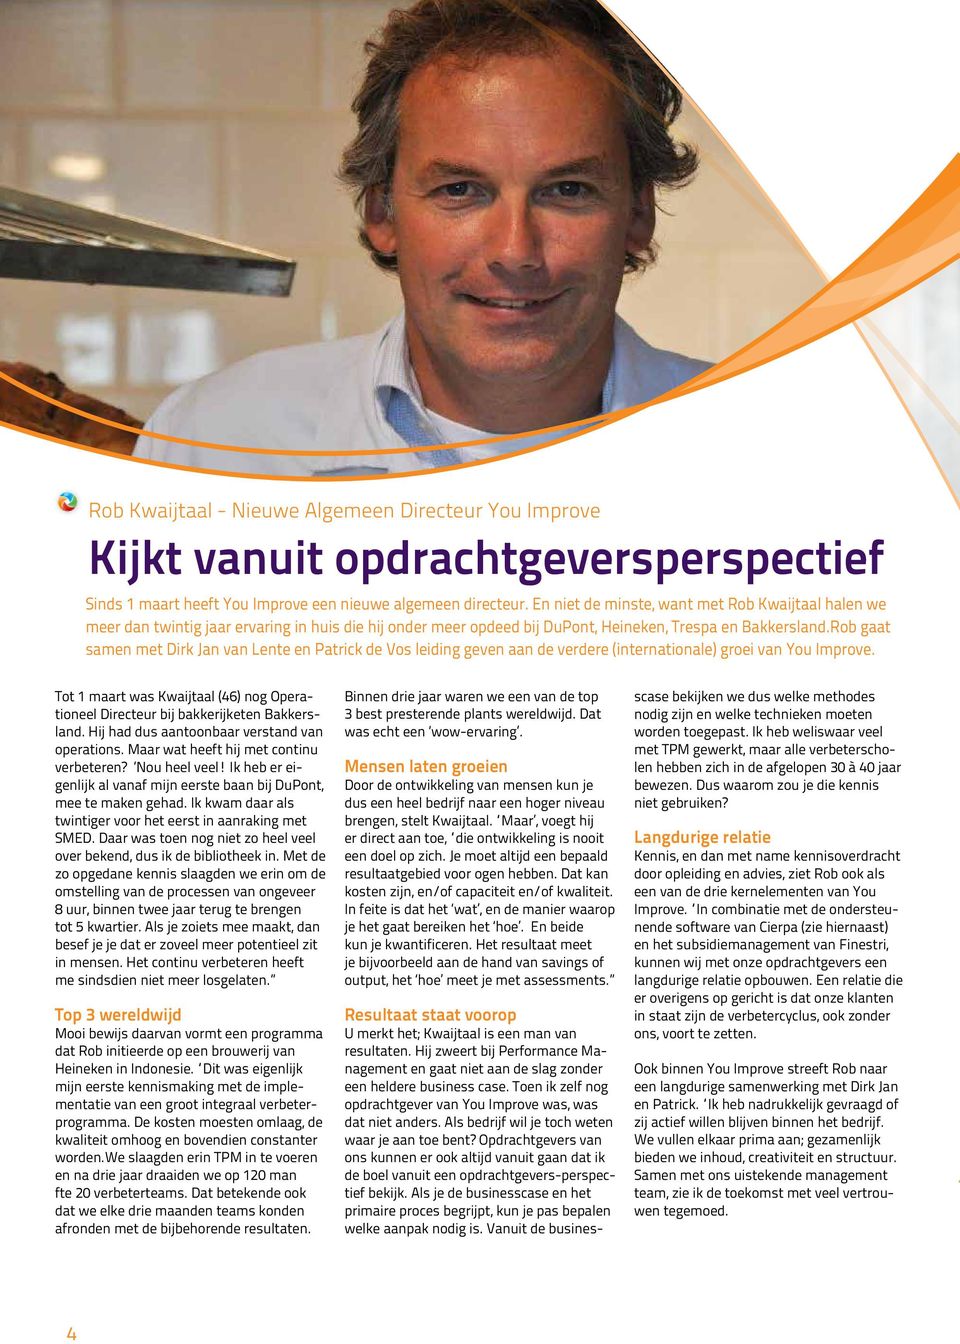 Rob gaat samen met Dirk Jan van Lente en Patrick de Vos leiding geven aan de verdere (internationale) groei van You Improve.